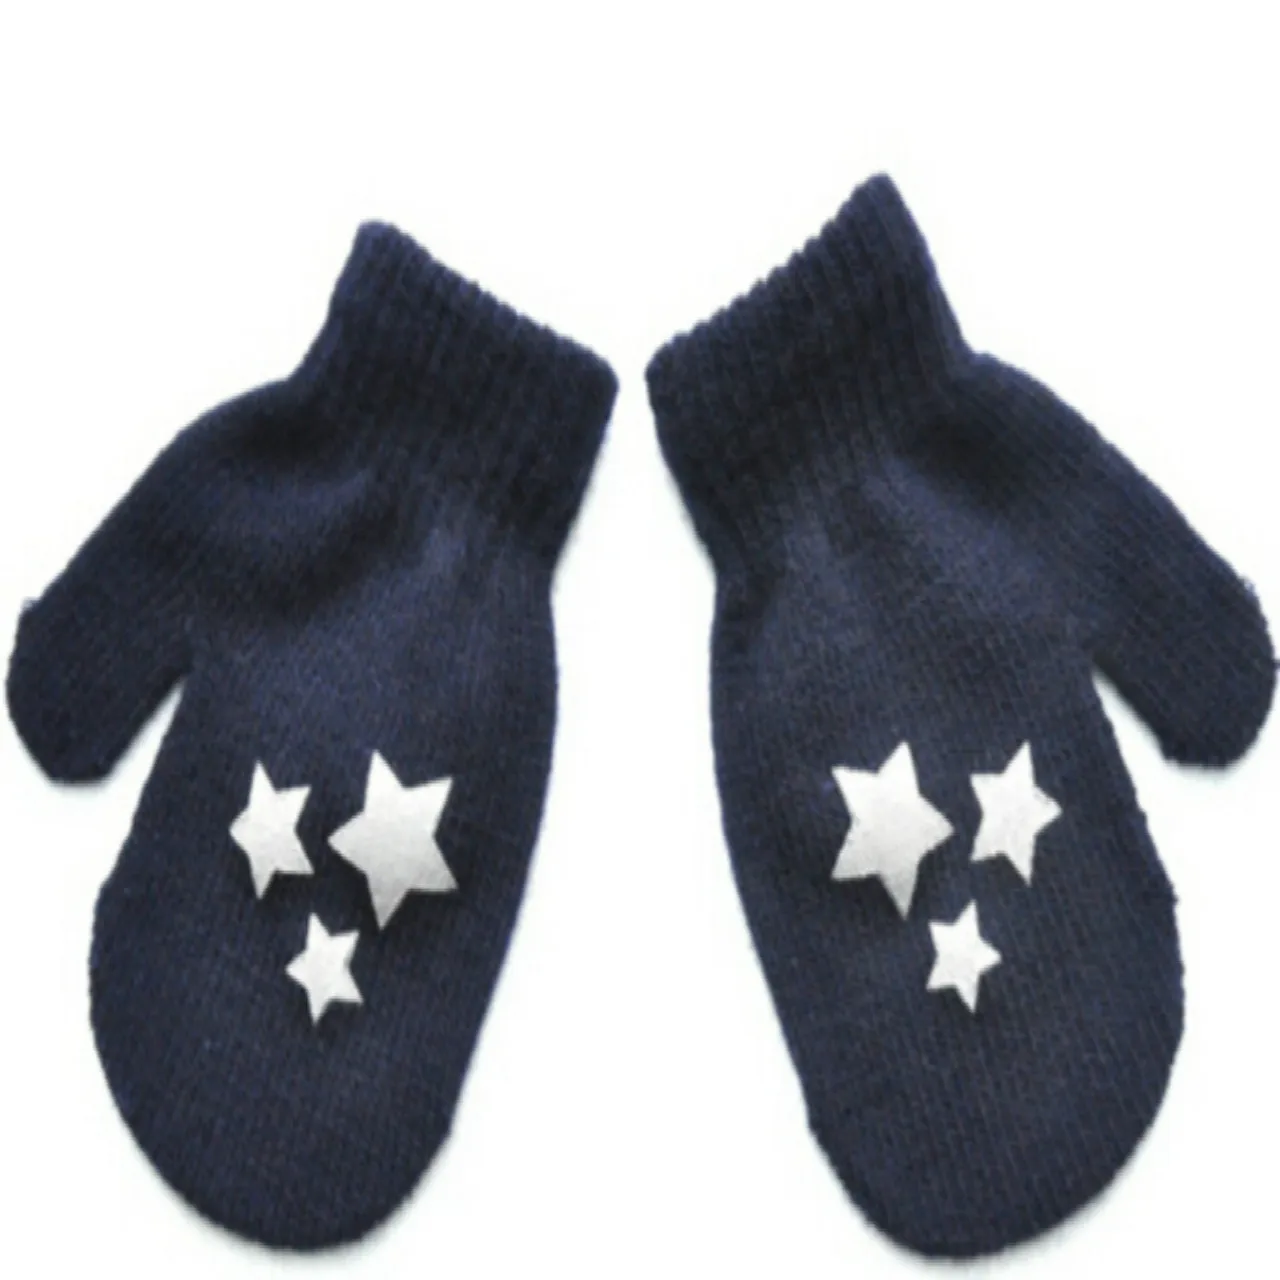 Зима, 4 цвета, детские варежки в горошек со звездами и сердечками, мягкие вязаные теплые перчатки для мальчиков и девочек